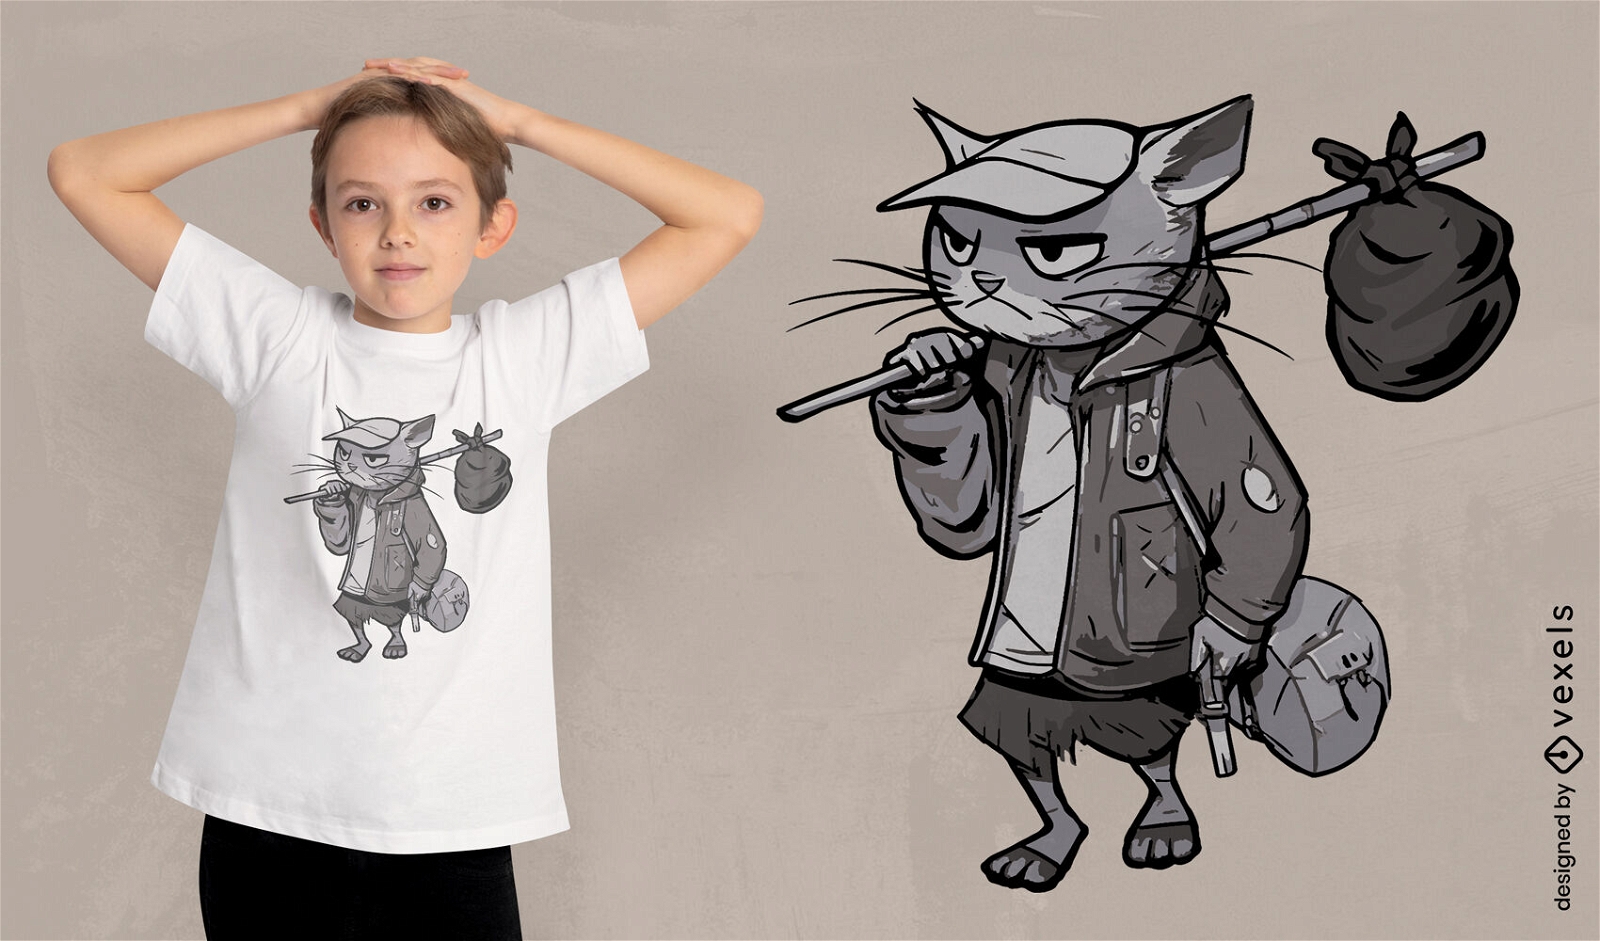 Plantilla de camiseta editable de gato callejero